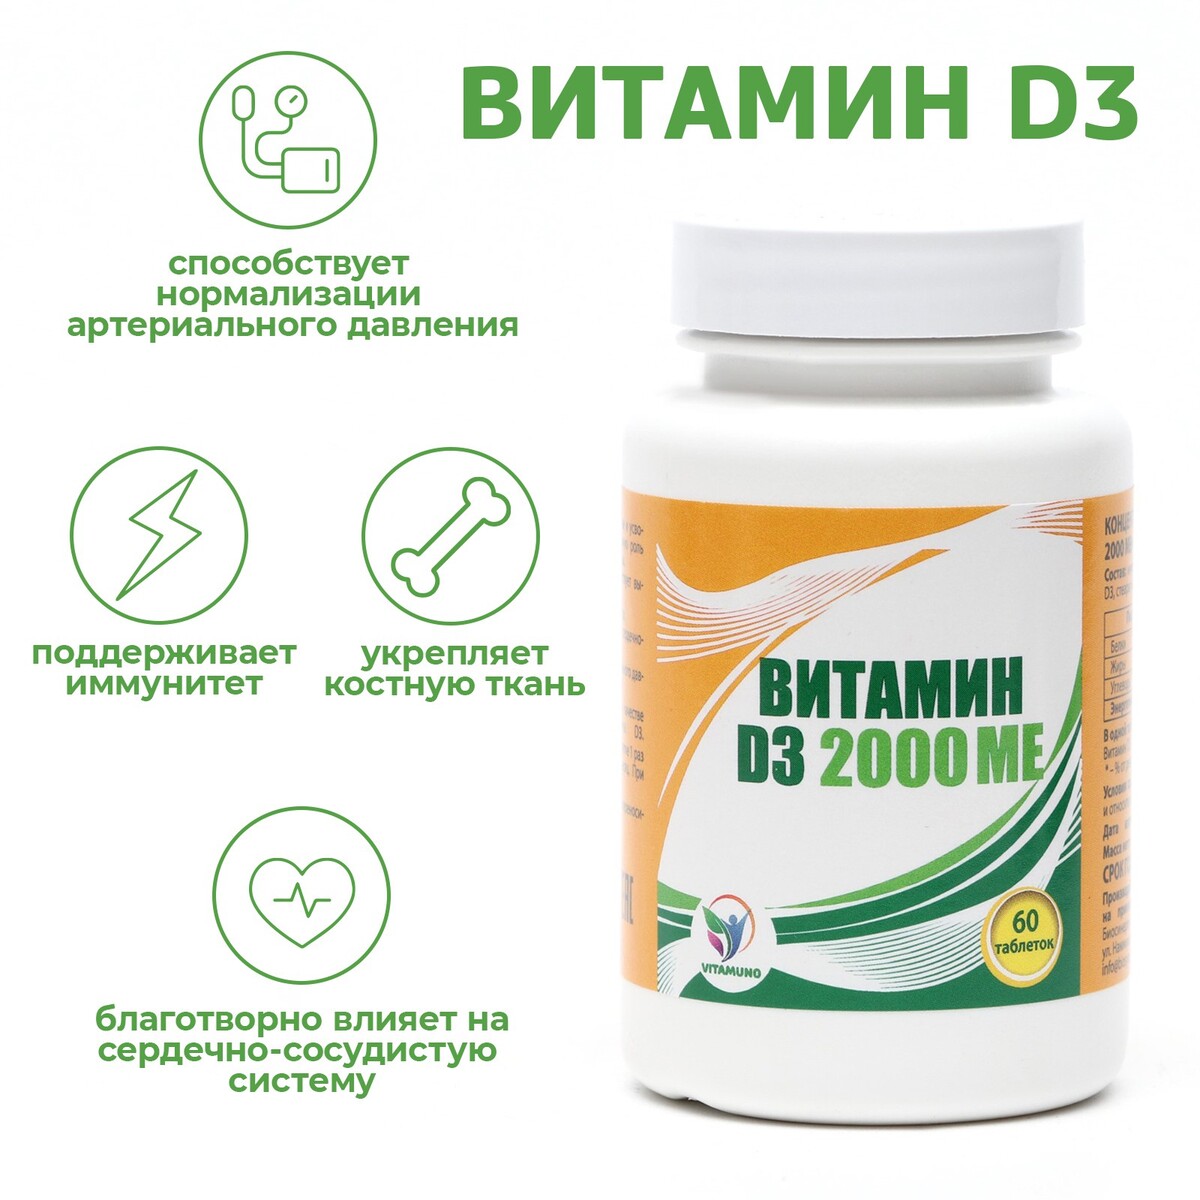 Витамин d3 2000 me vitamuno, 60 таблеток ибп powerman online 2000 plus